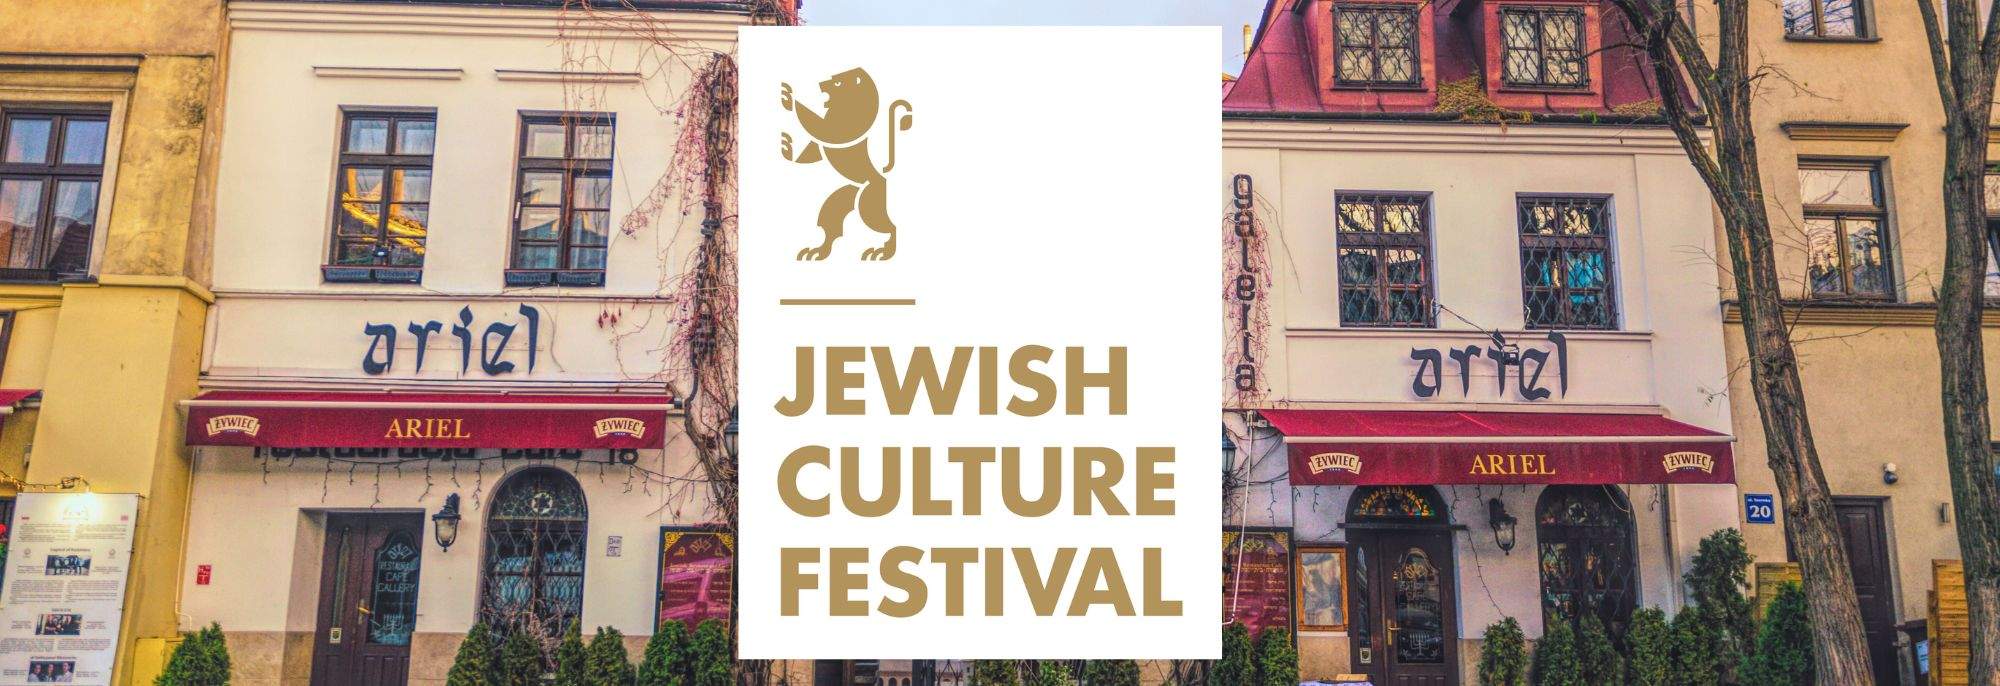 Il 32° Festival della Cultura Ebraica Inizia Domani: Una Celebrazione Culturale a Cracovia